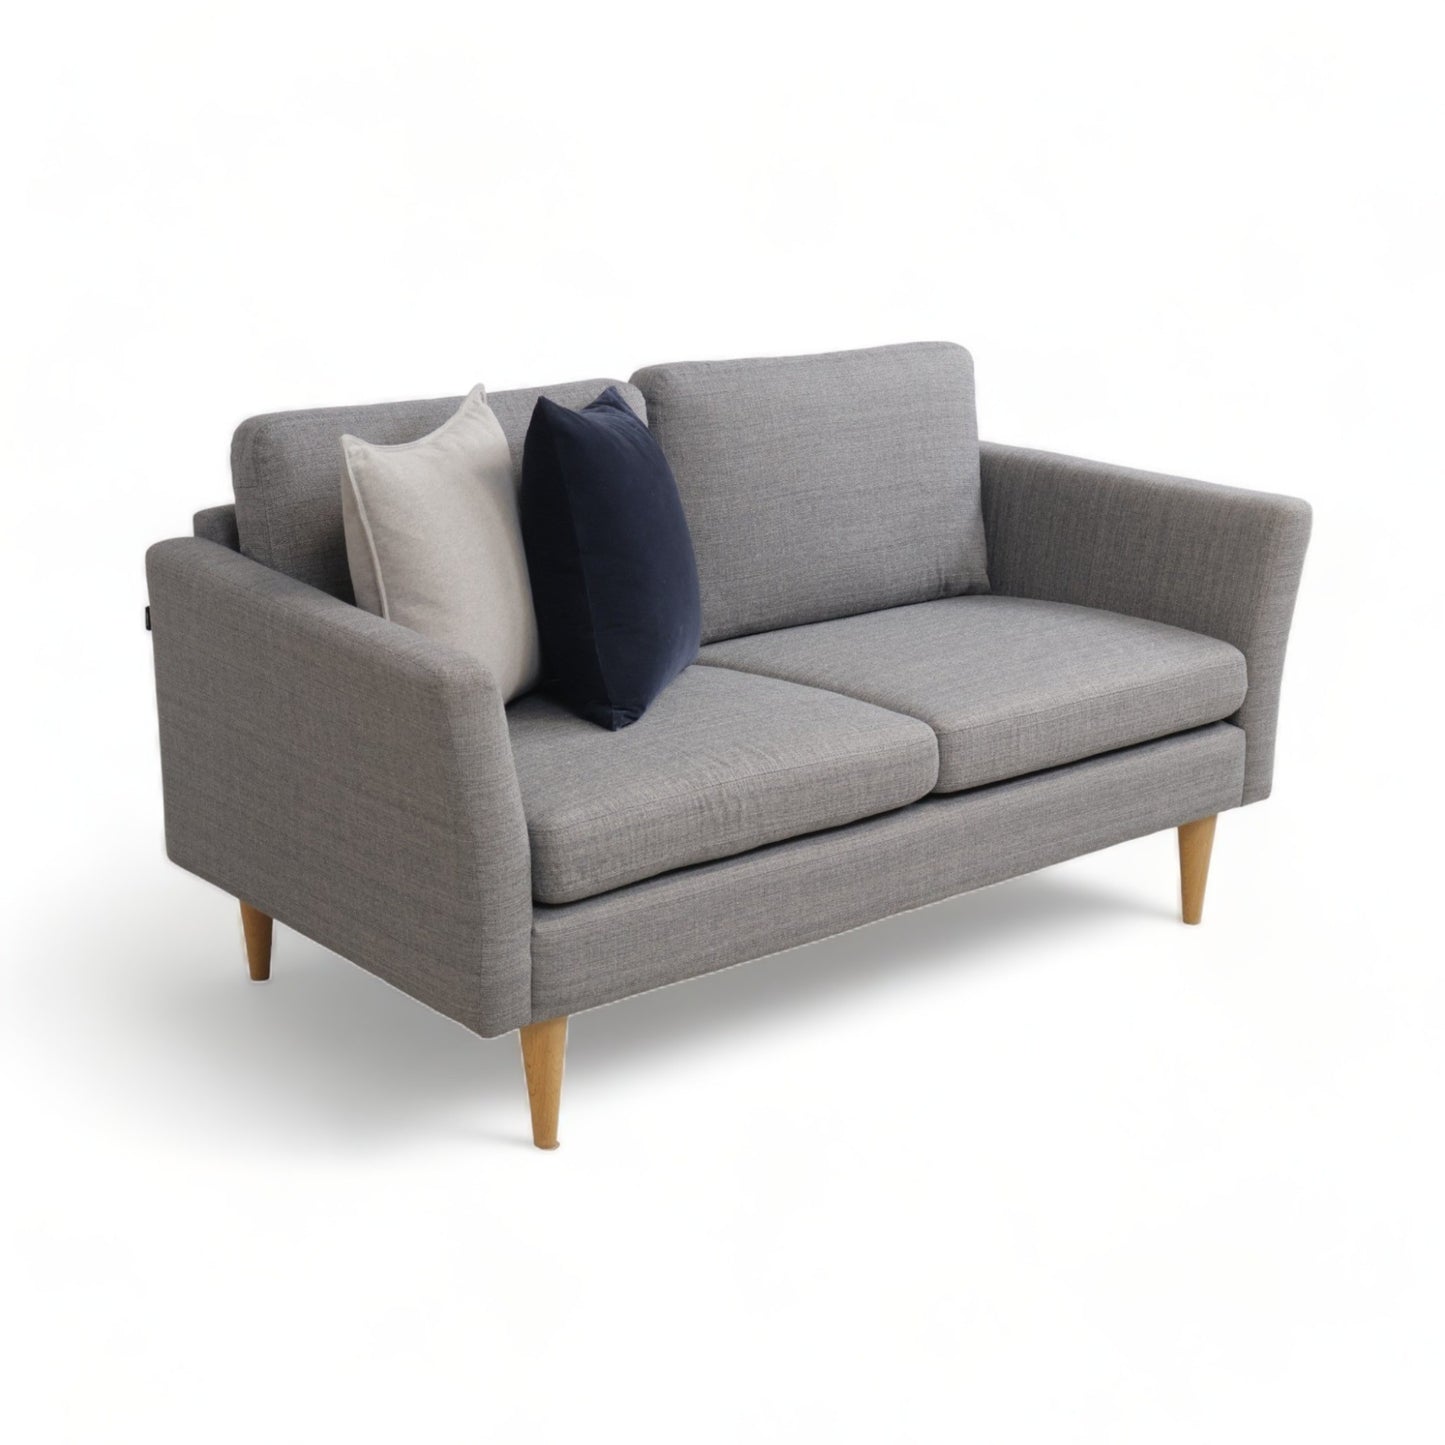 Nyrenset | Grå Hjort Knudsen 2-seter sofa